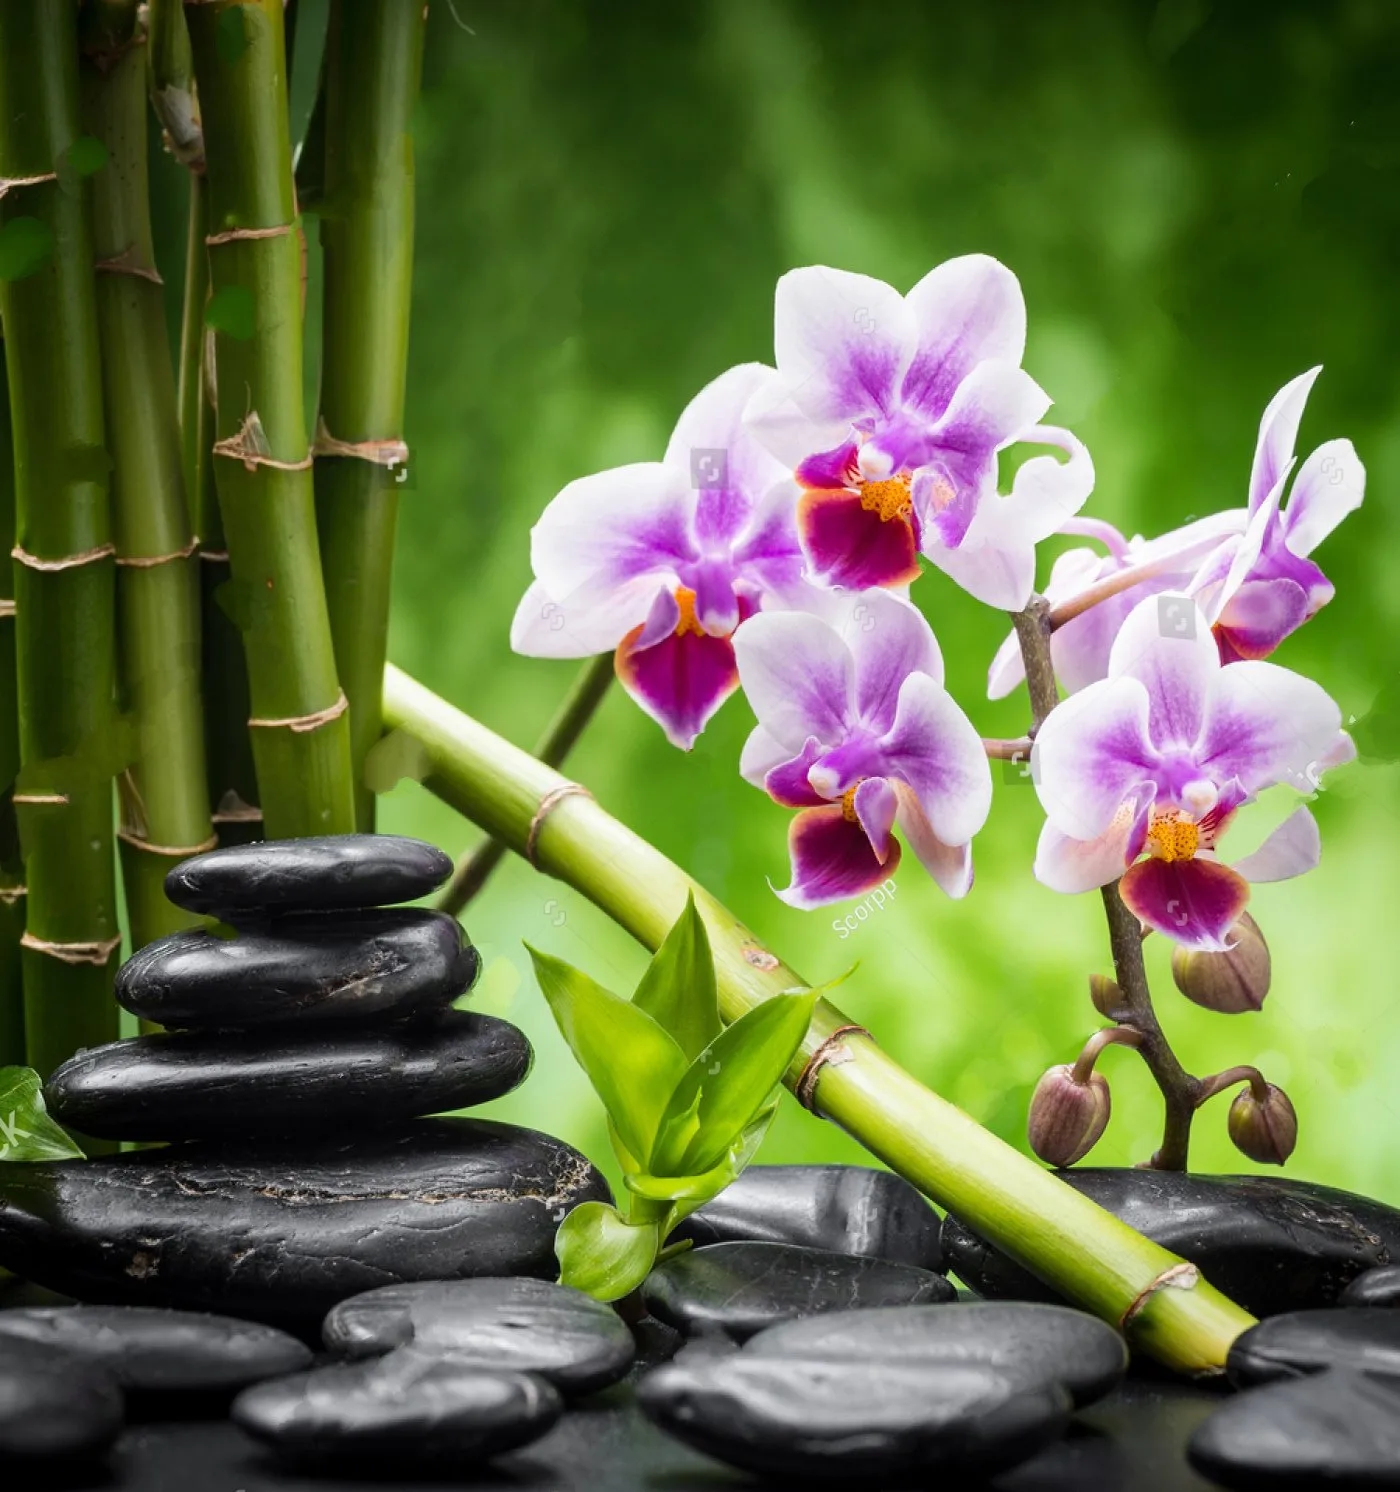 

JMINE Div 5D Орхидея цветок Бамбук спа полностью Алмазная краска наборы для вышивки крестиком искусство Высокое качество цветочный 3D краска алм...